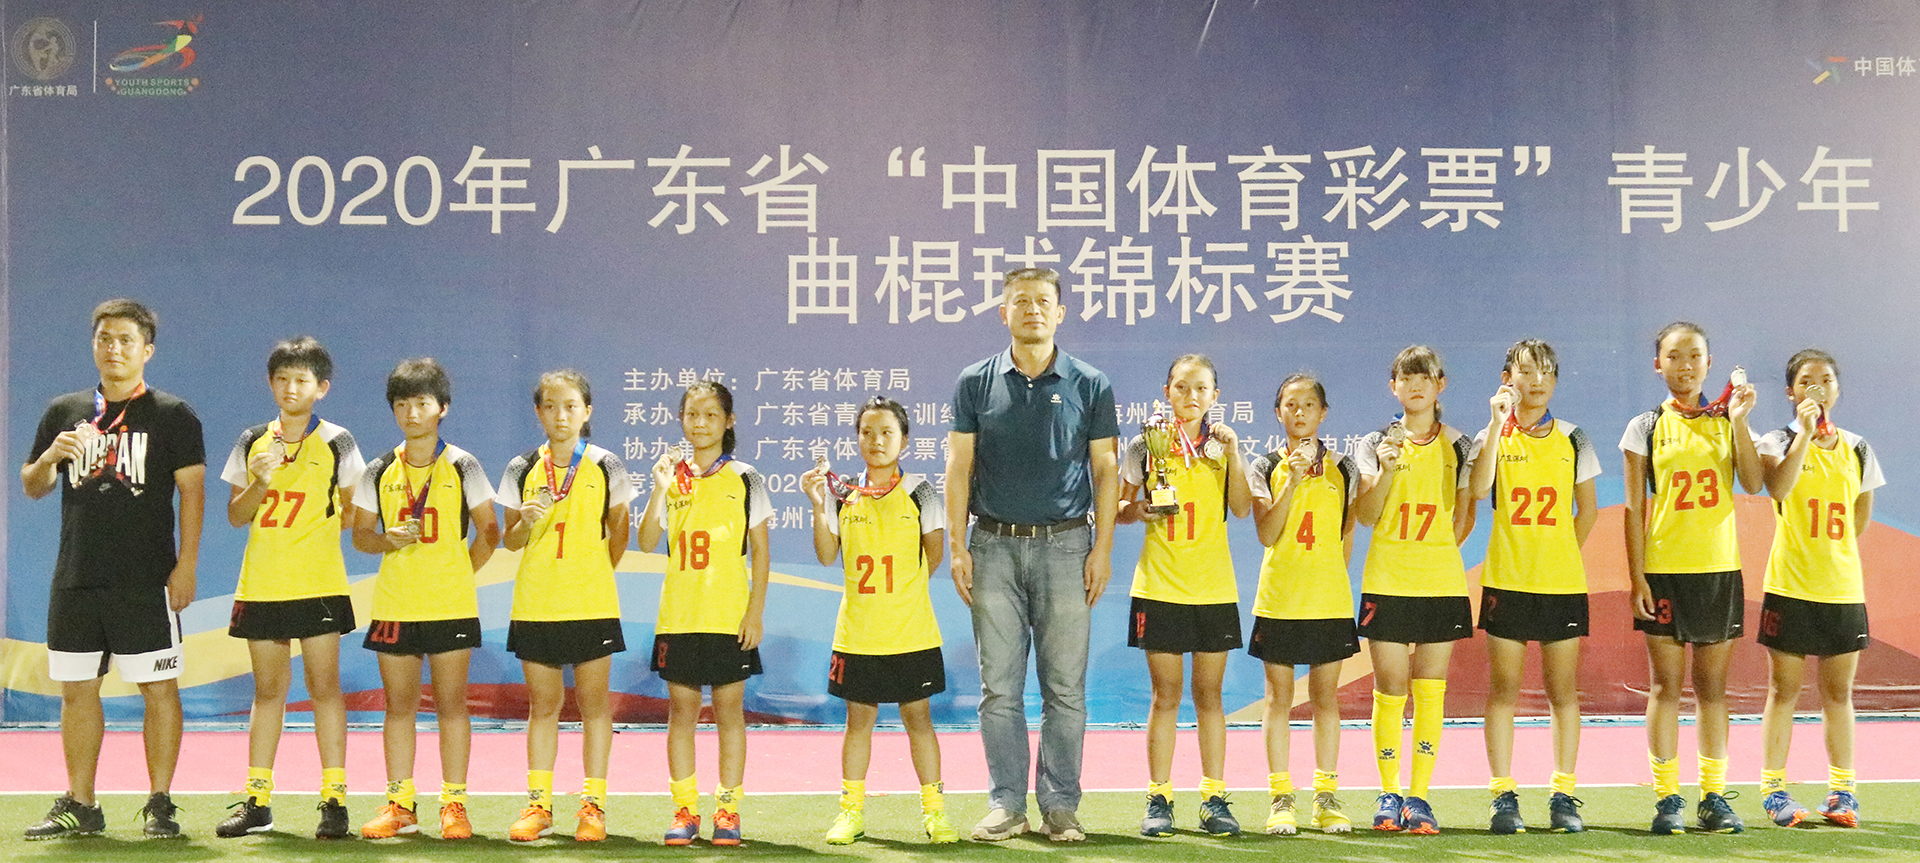 2020年青少年女子曲棍球锦标赛 乙组第二名